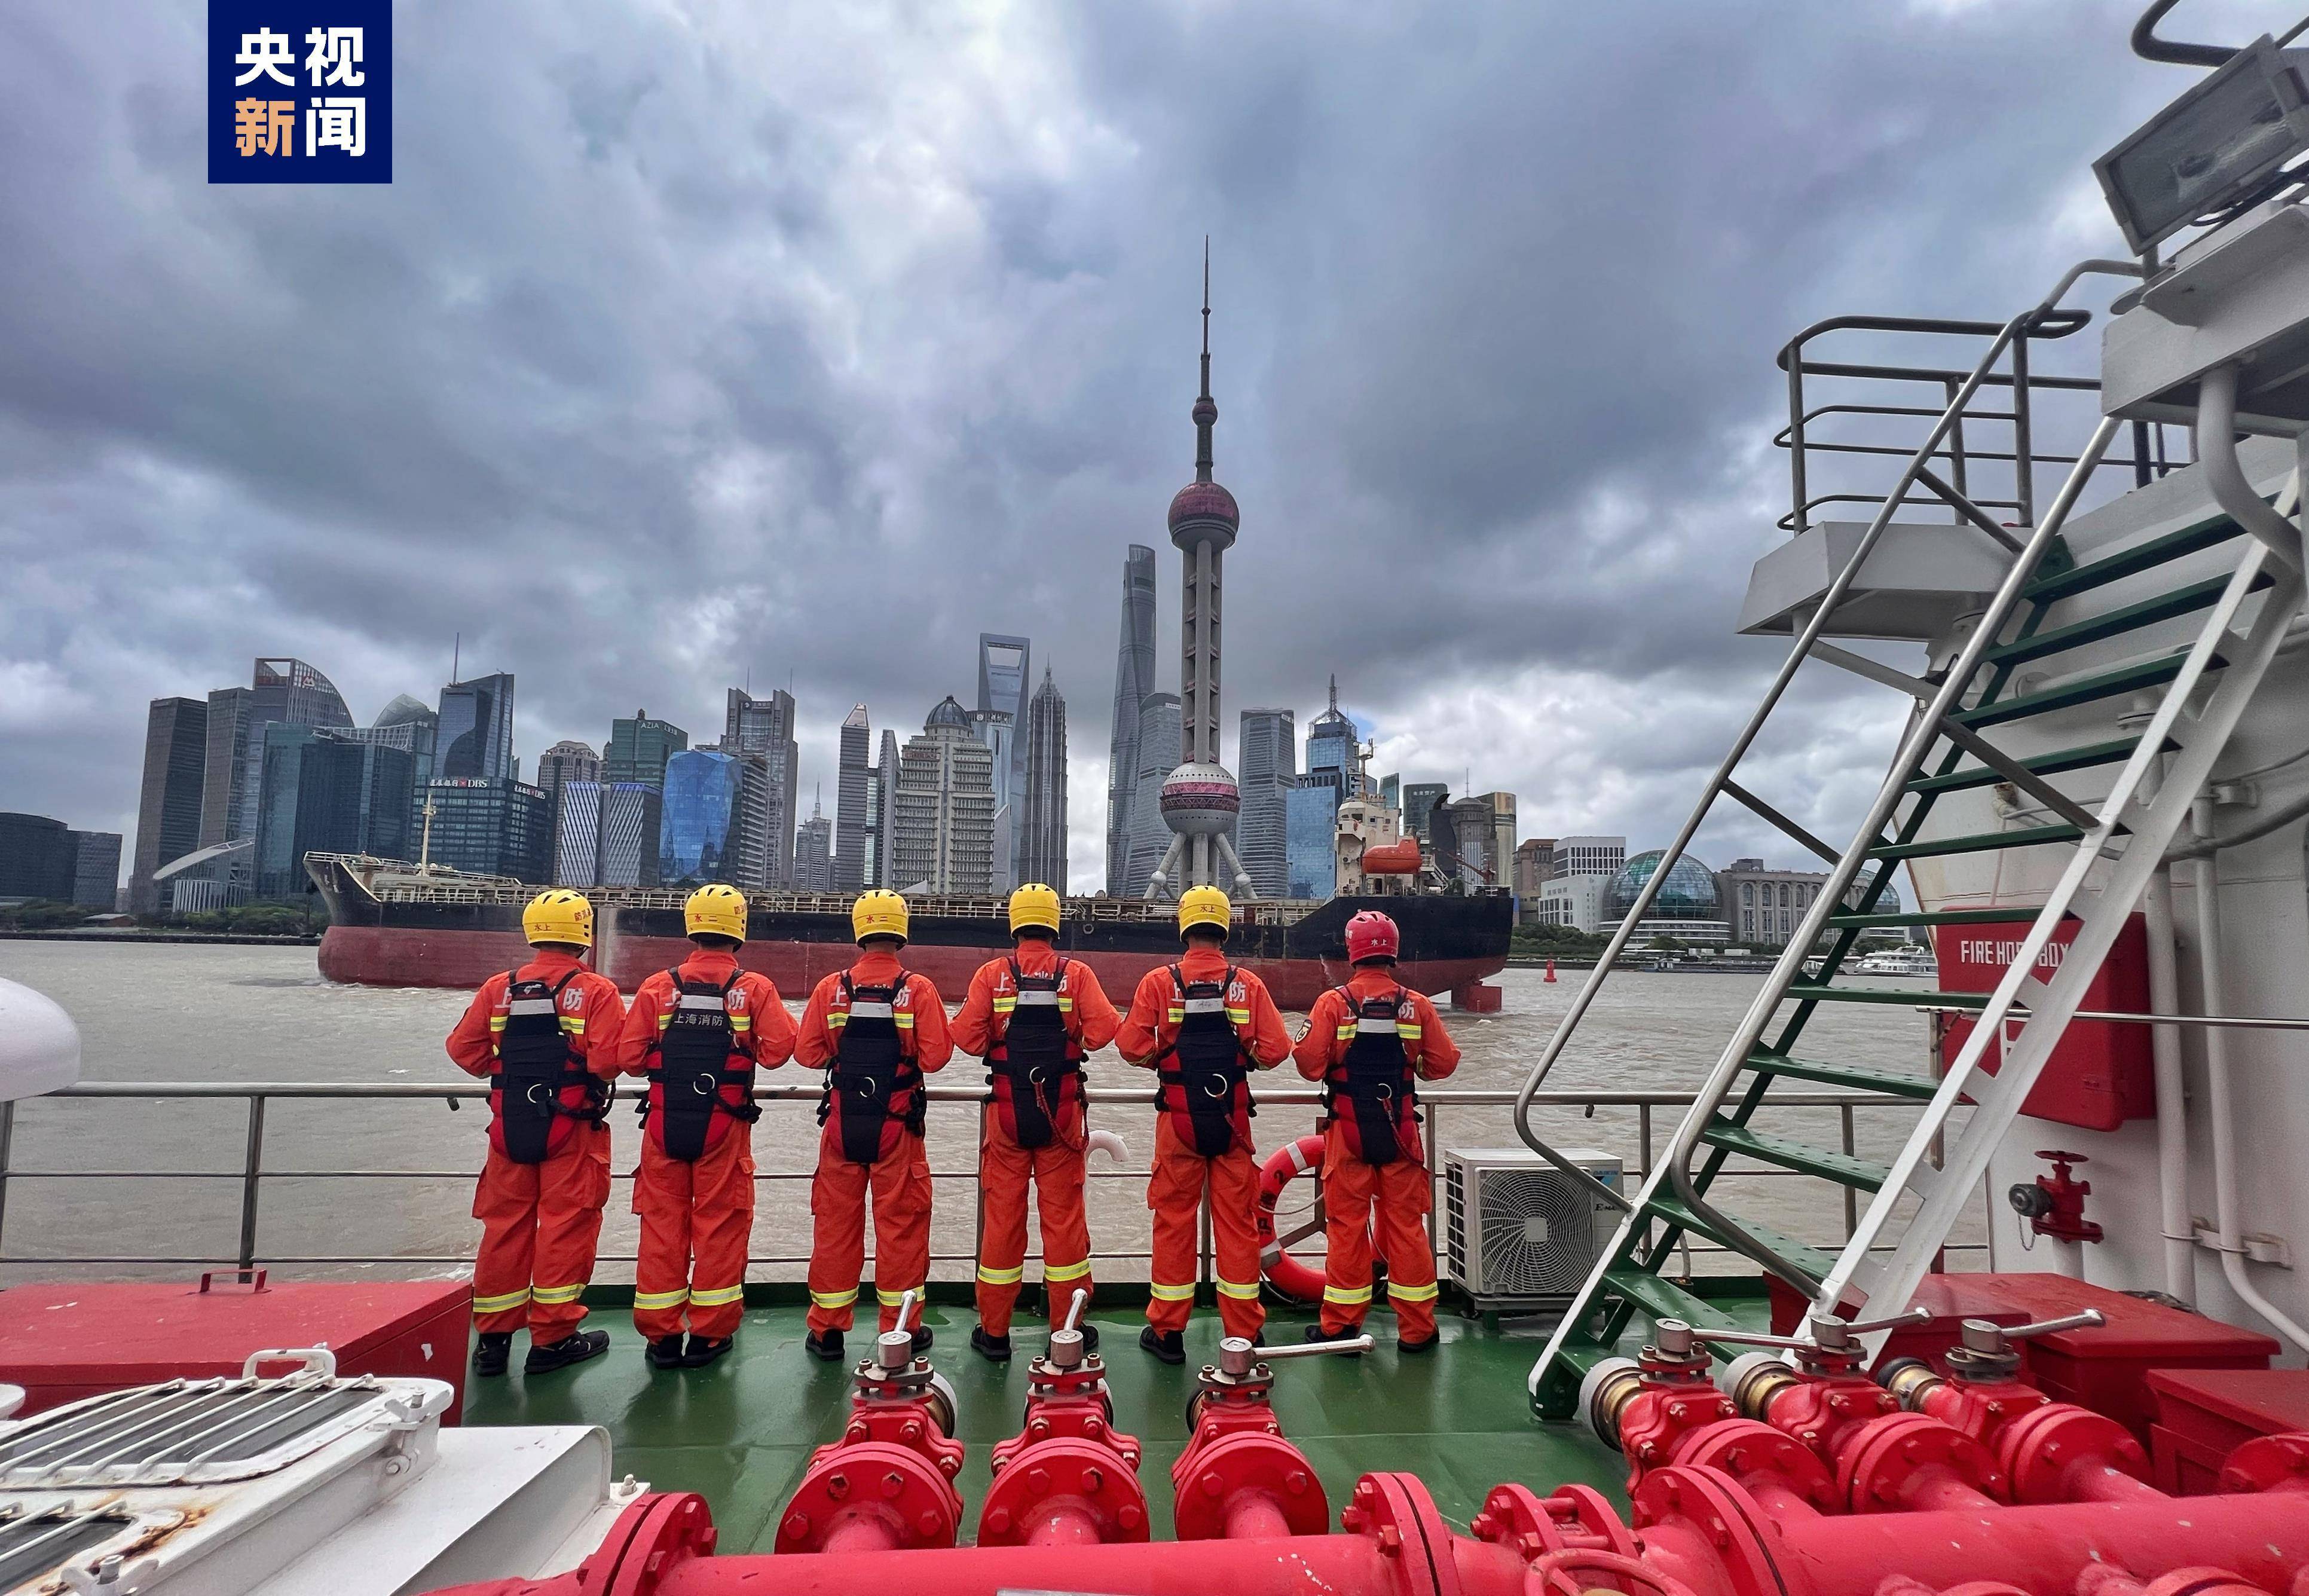 台风“轩岚诺”来袭 上海部分公园、景区临时关闭 消防部门24小时备勤